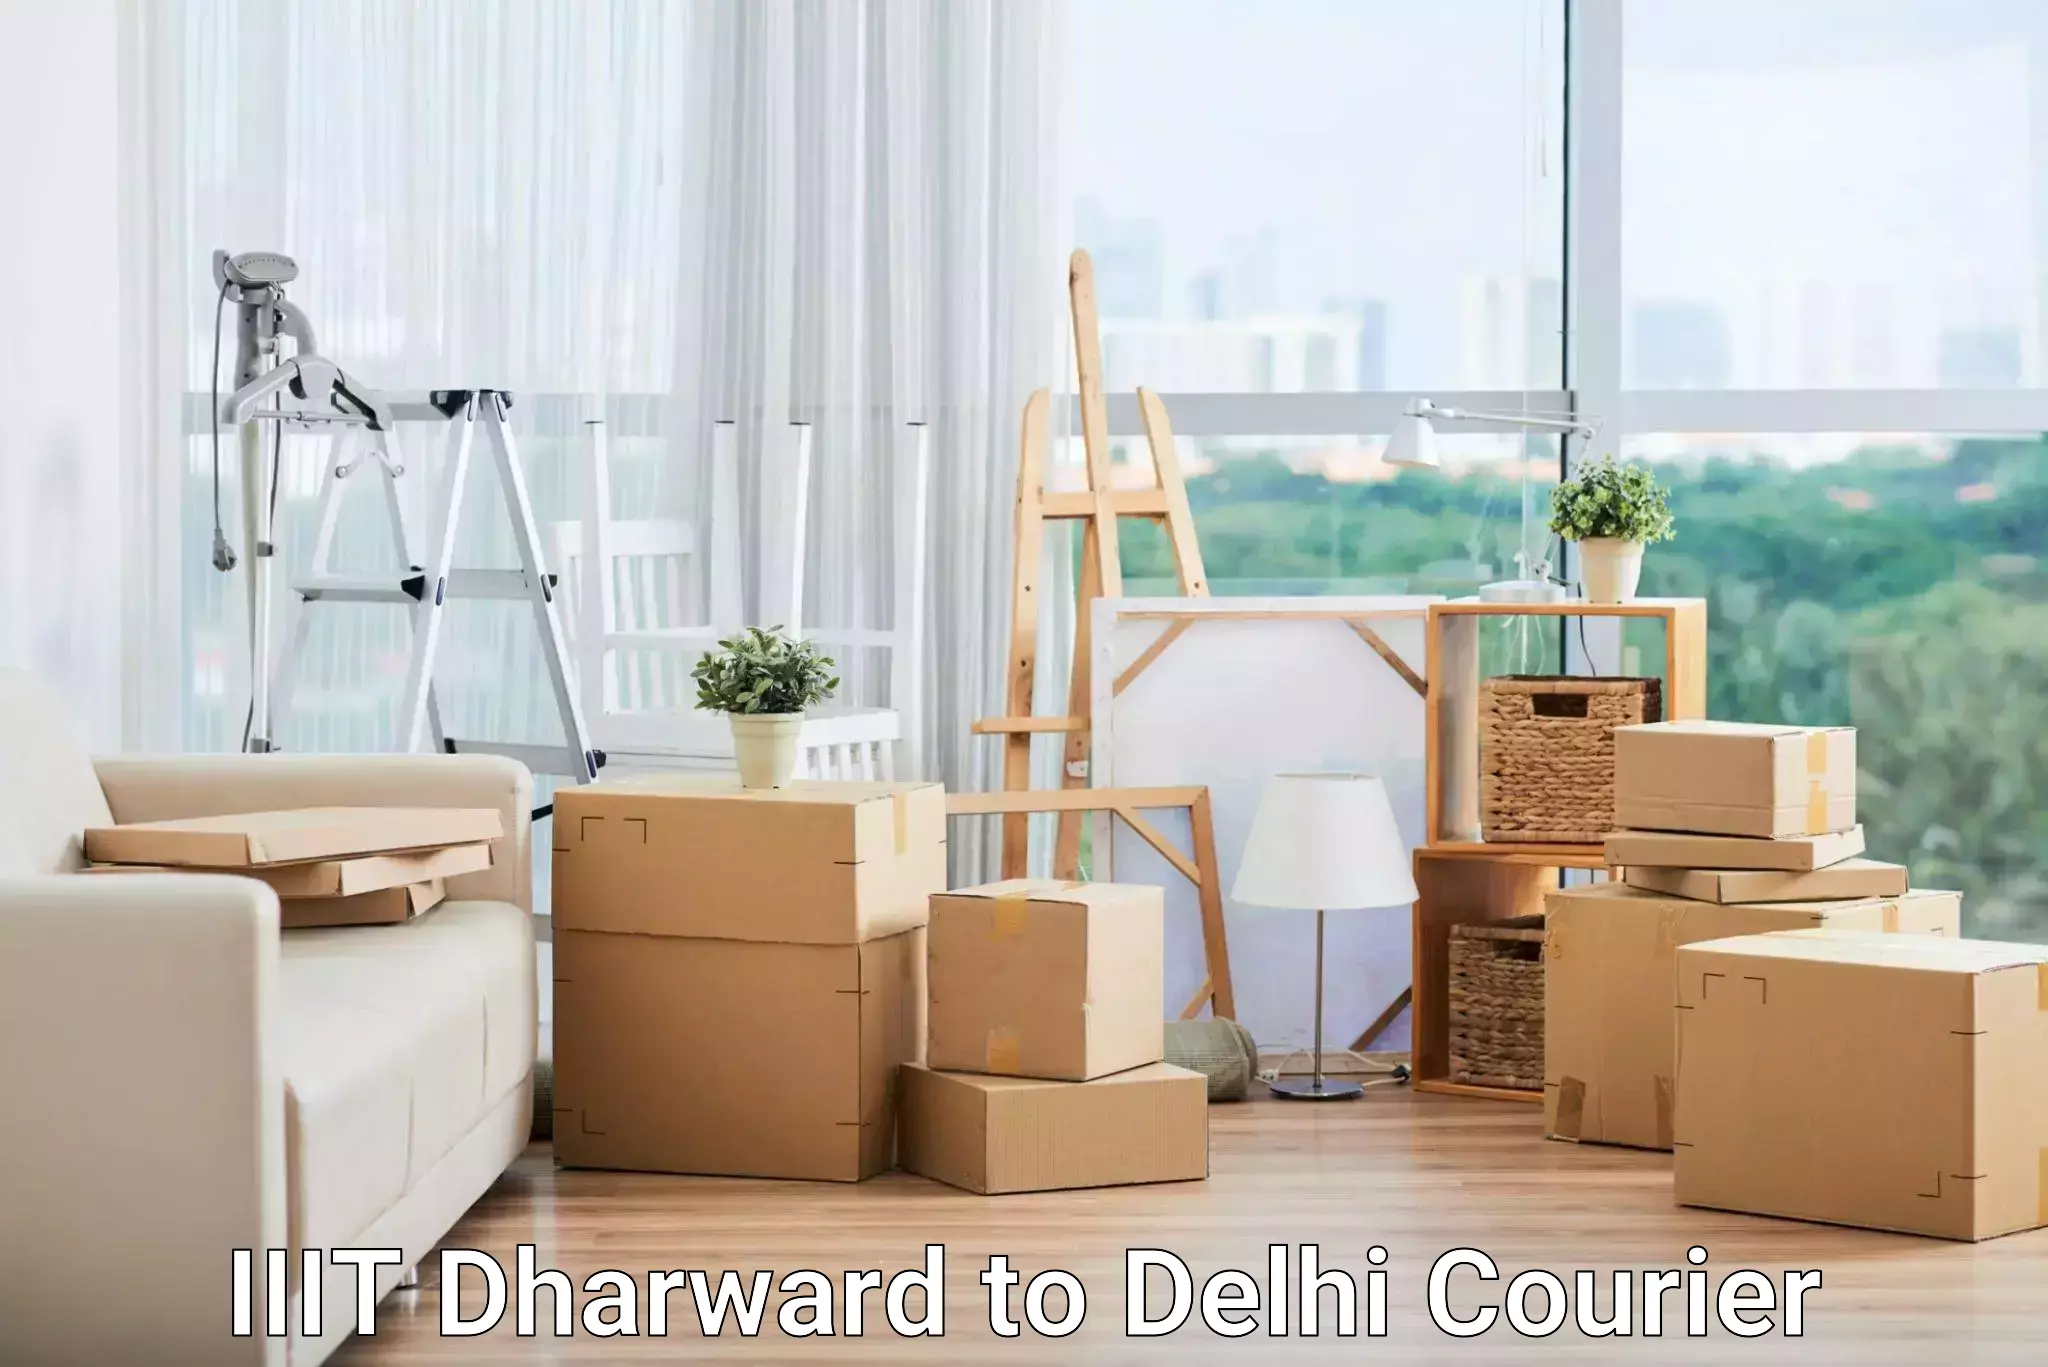 Efficient parcel delivery in IIIT Dharward to IIT Delhi